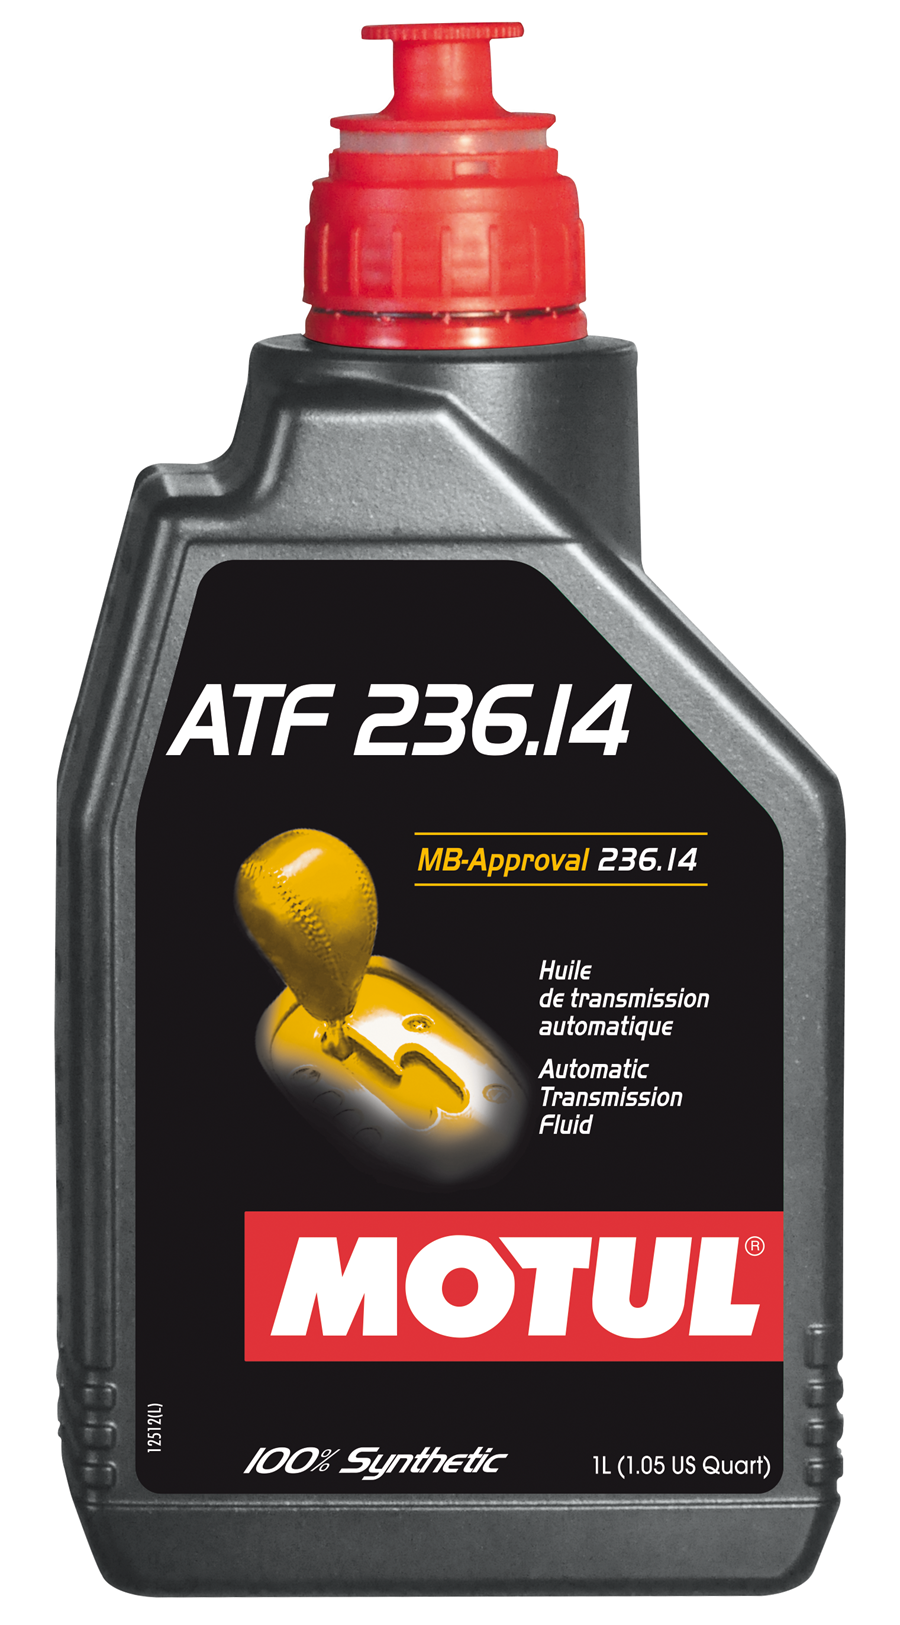 Motul ATF 236.14 Трансмиссионная жидкость для АКПП Мерседес Бенц